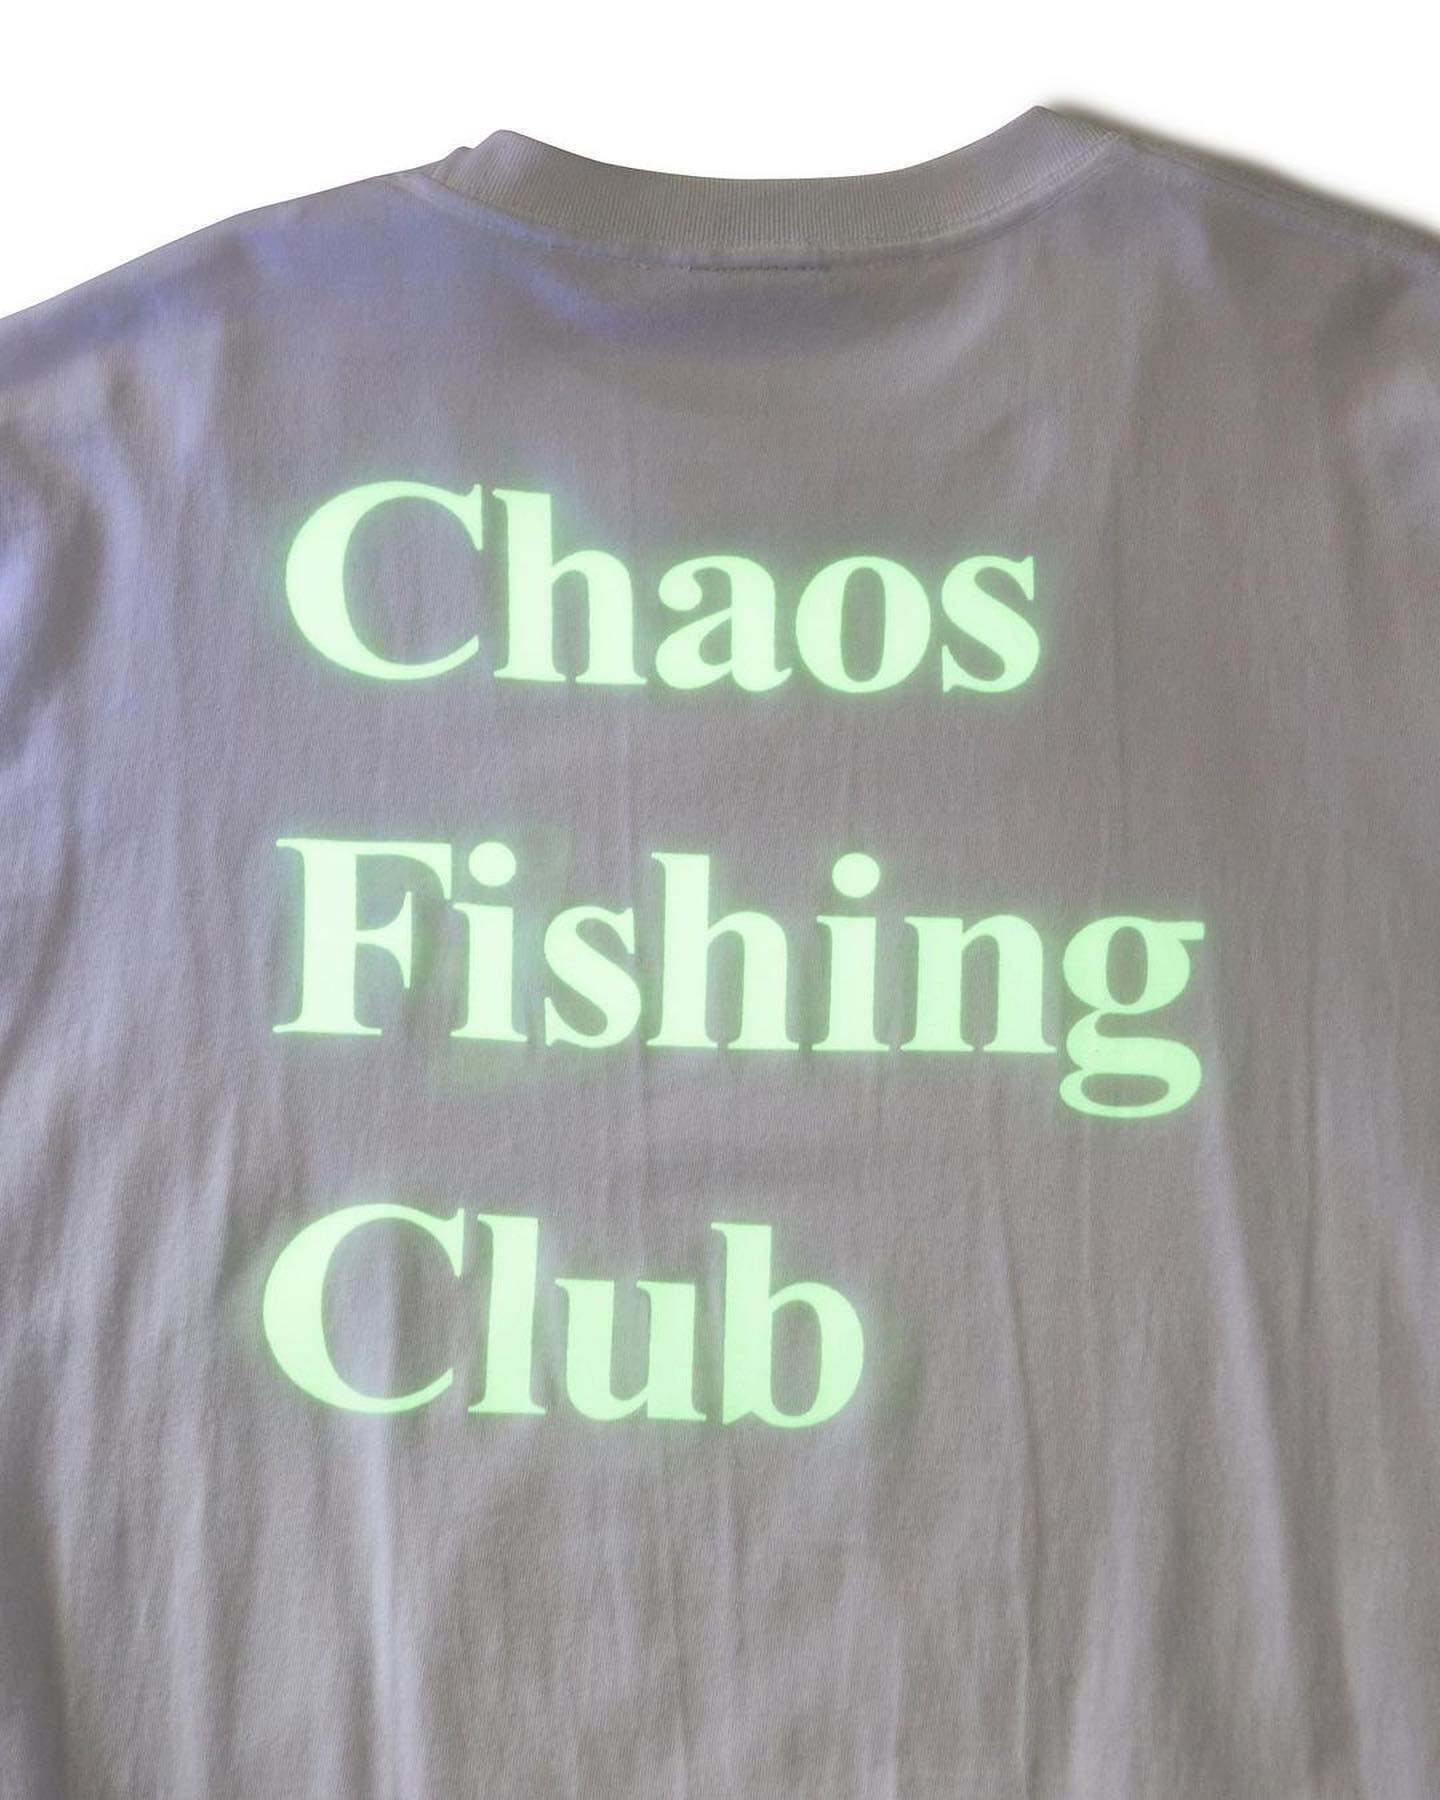 @chaos_fishing_club Chaos Fishing Club / New Collection釣りとスケートボードをこよなく愛する東京発の謎の集団。感度の高いスケーターをサポートしている純国産のアパレルブランド。定番のLOGOをプリントしたロンTは蓄光プリントで暗闇で光ります#chaosfishingclub #insantskateshop#instantskateboards